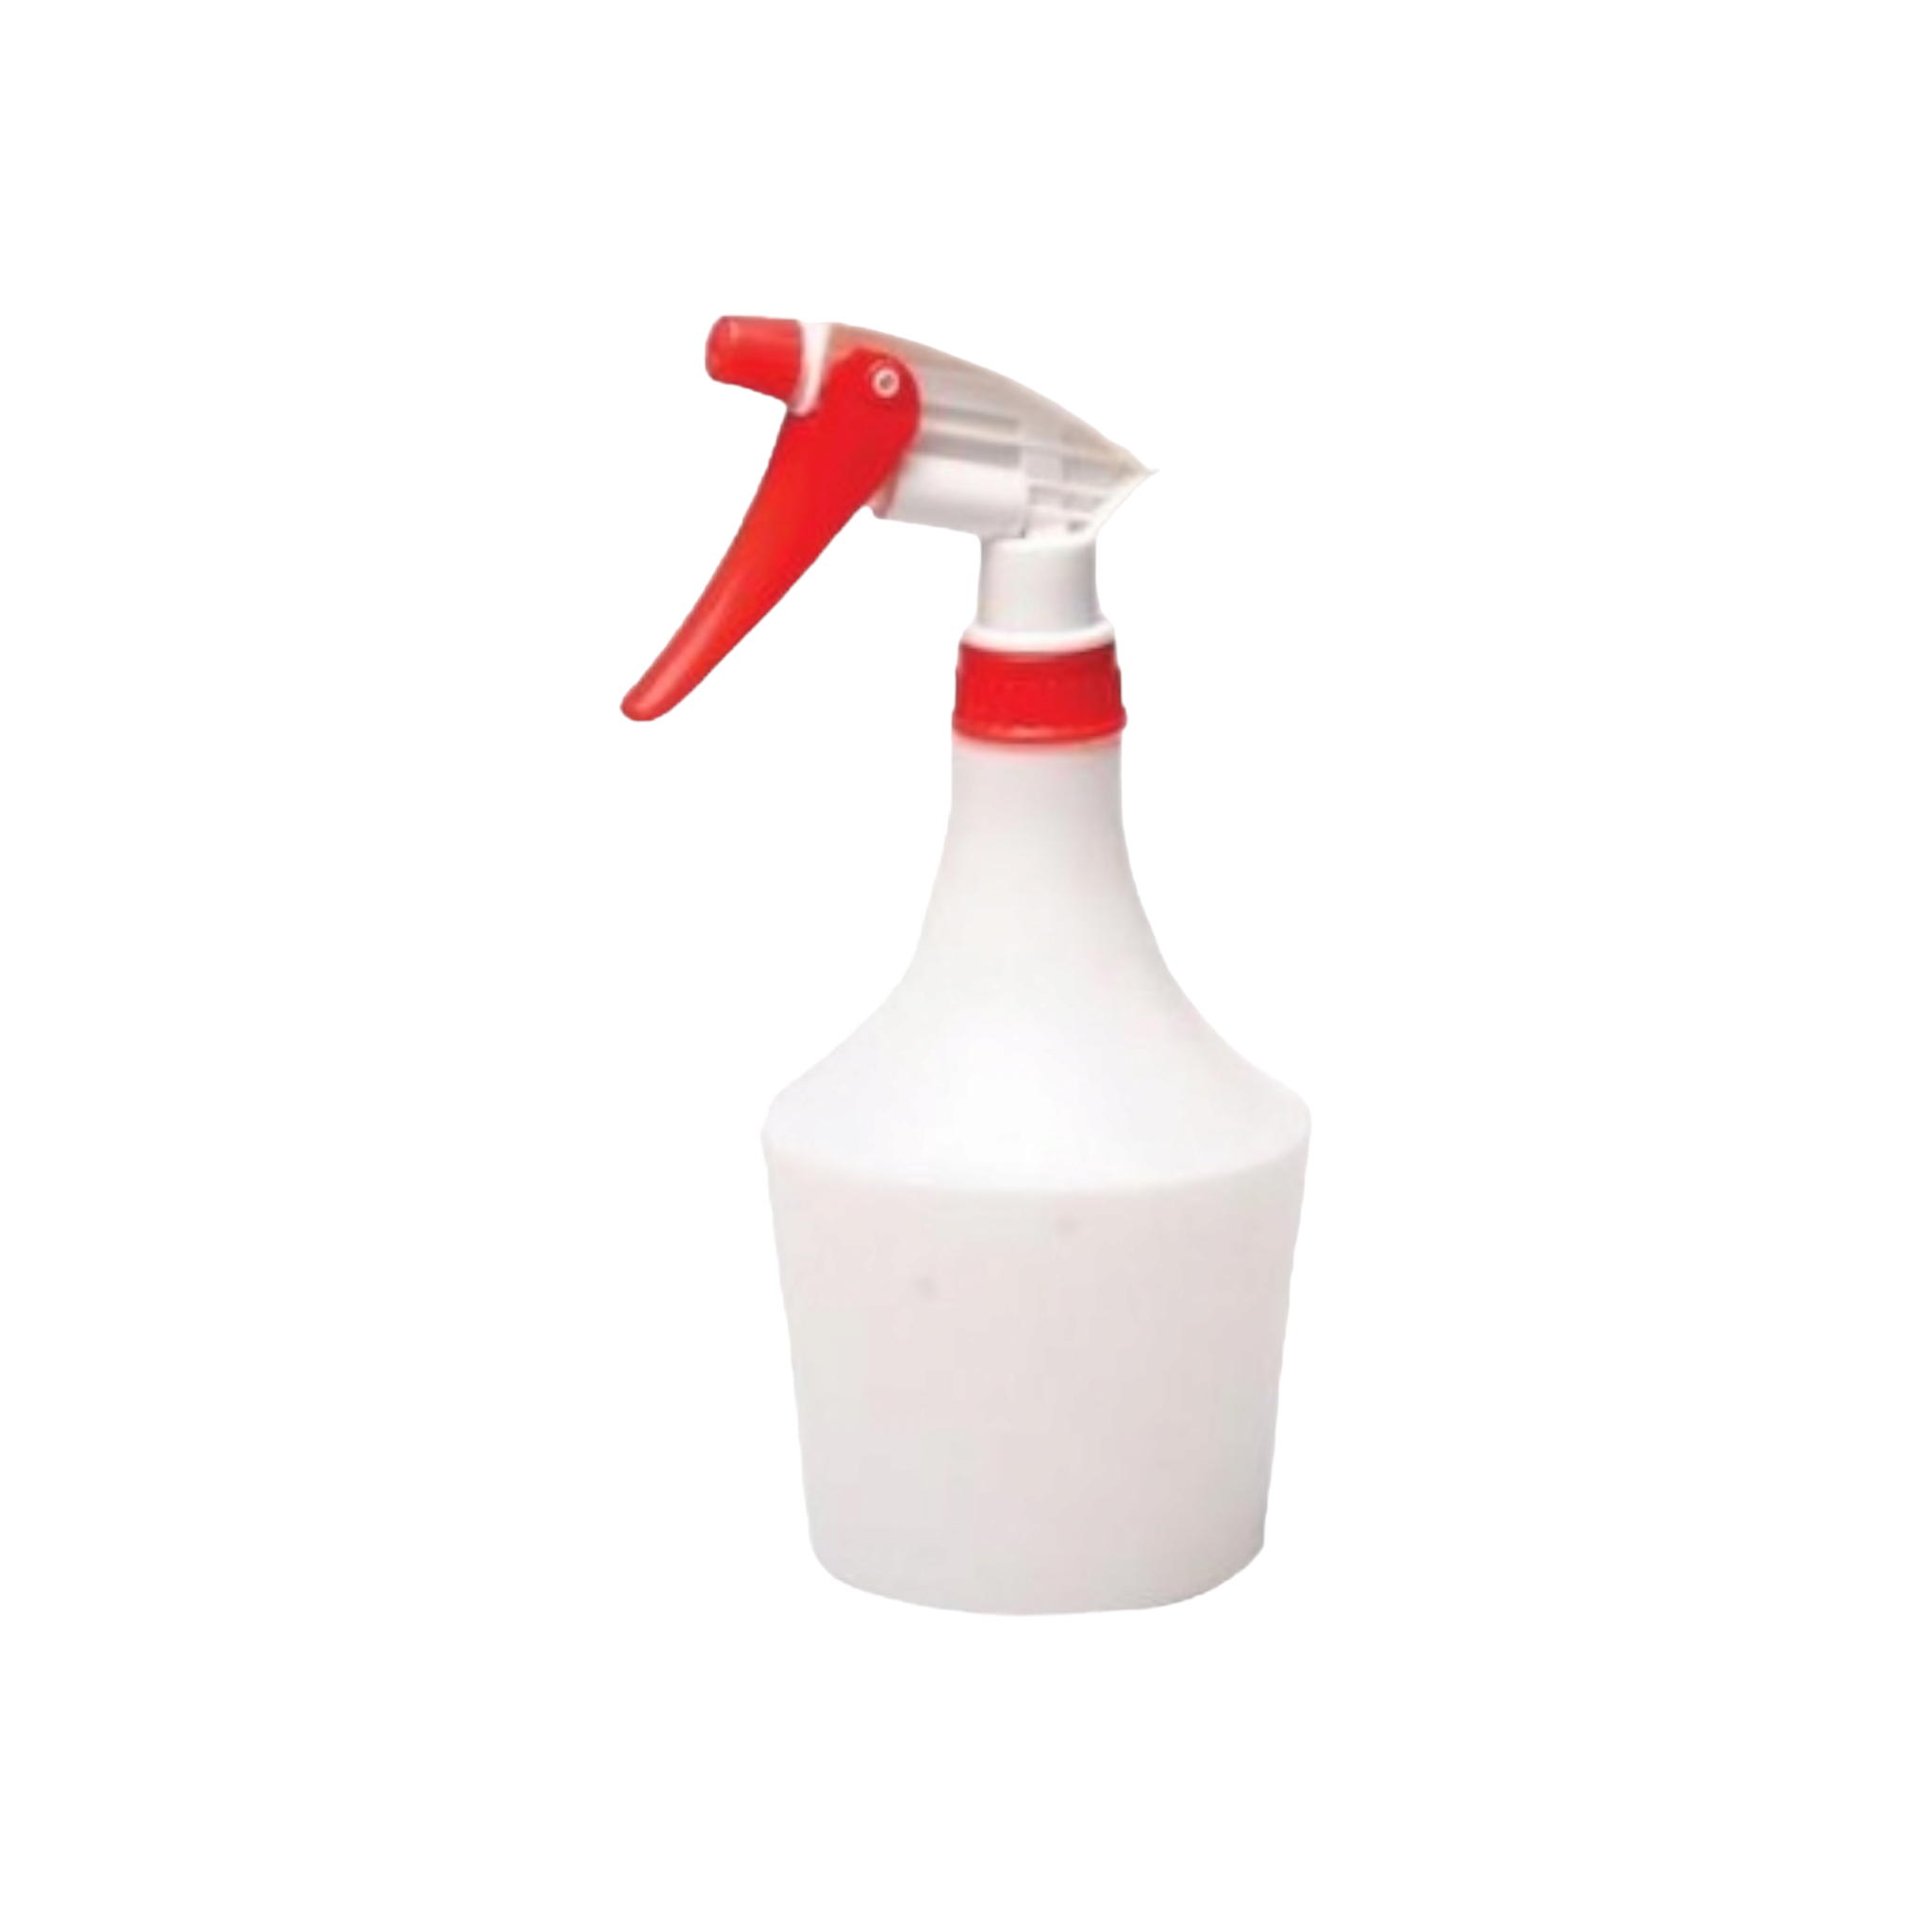 700ml Trigger Spray Household Bottle Plastic